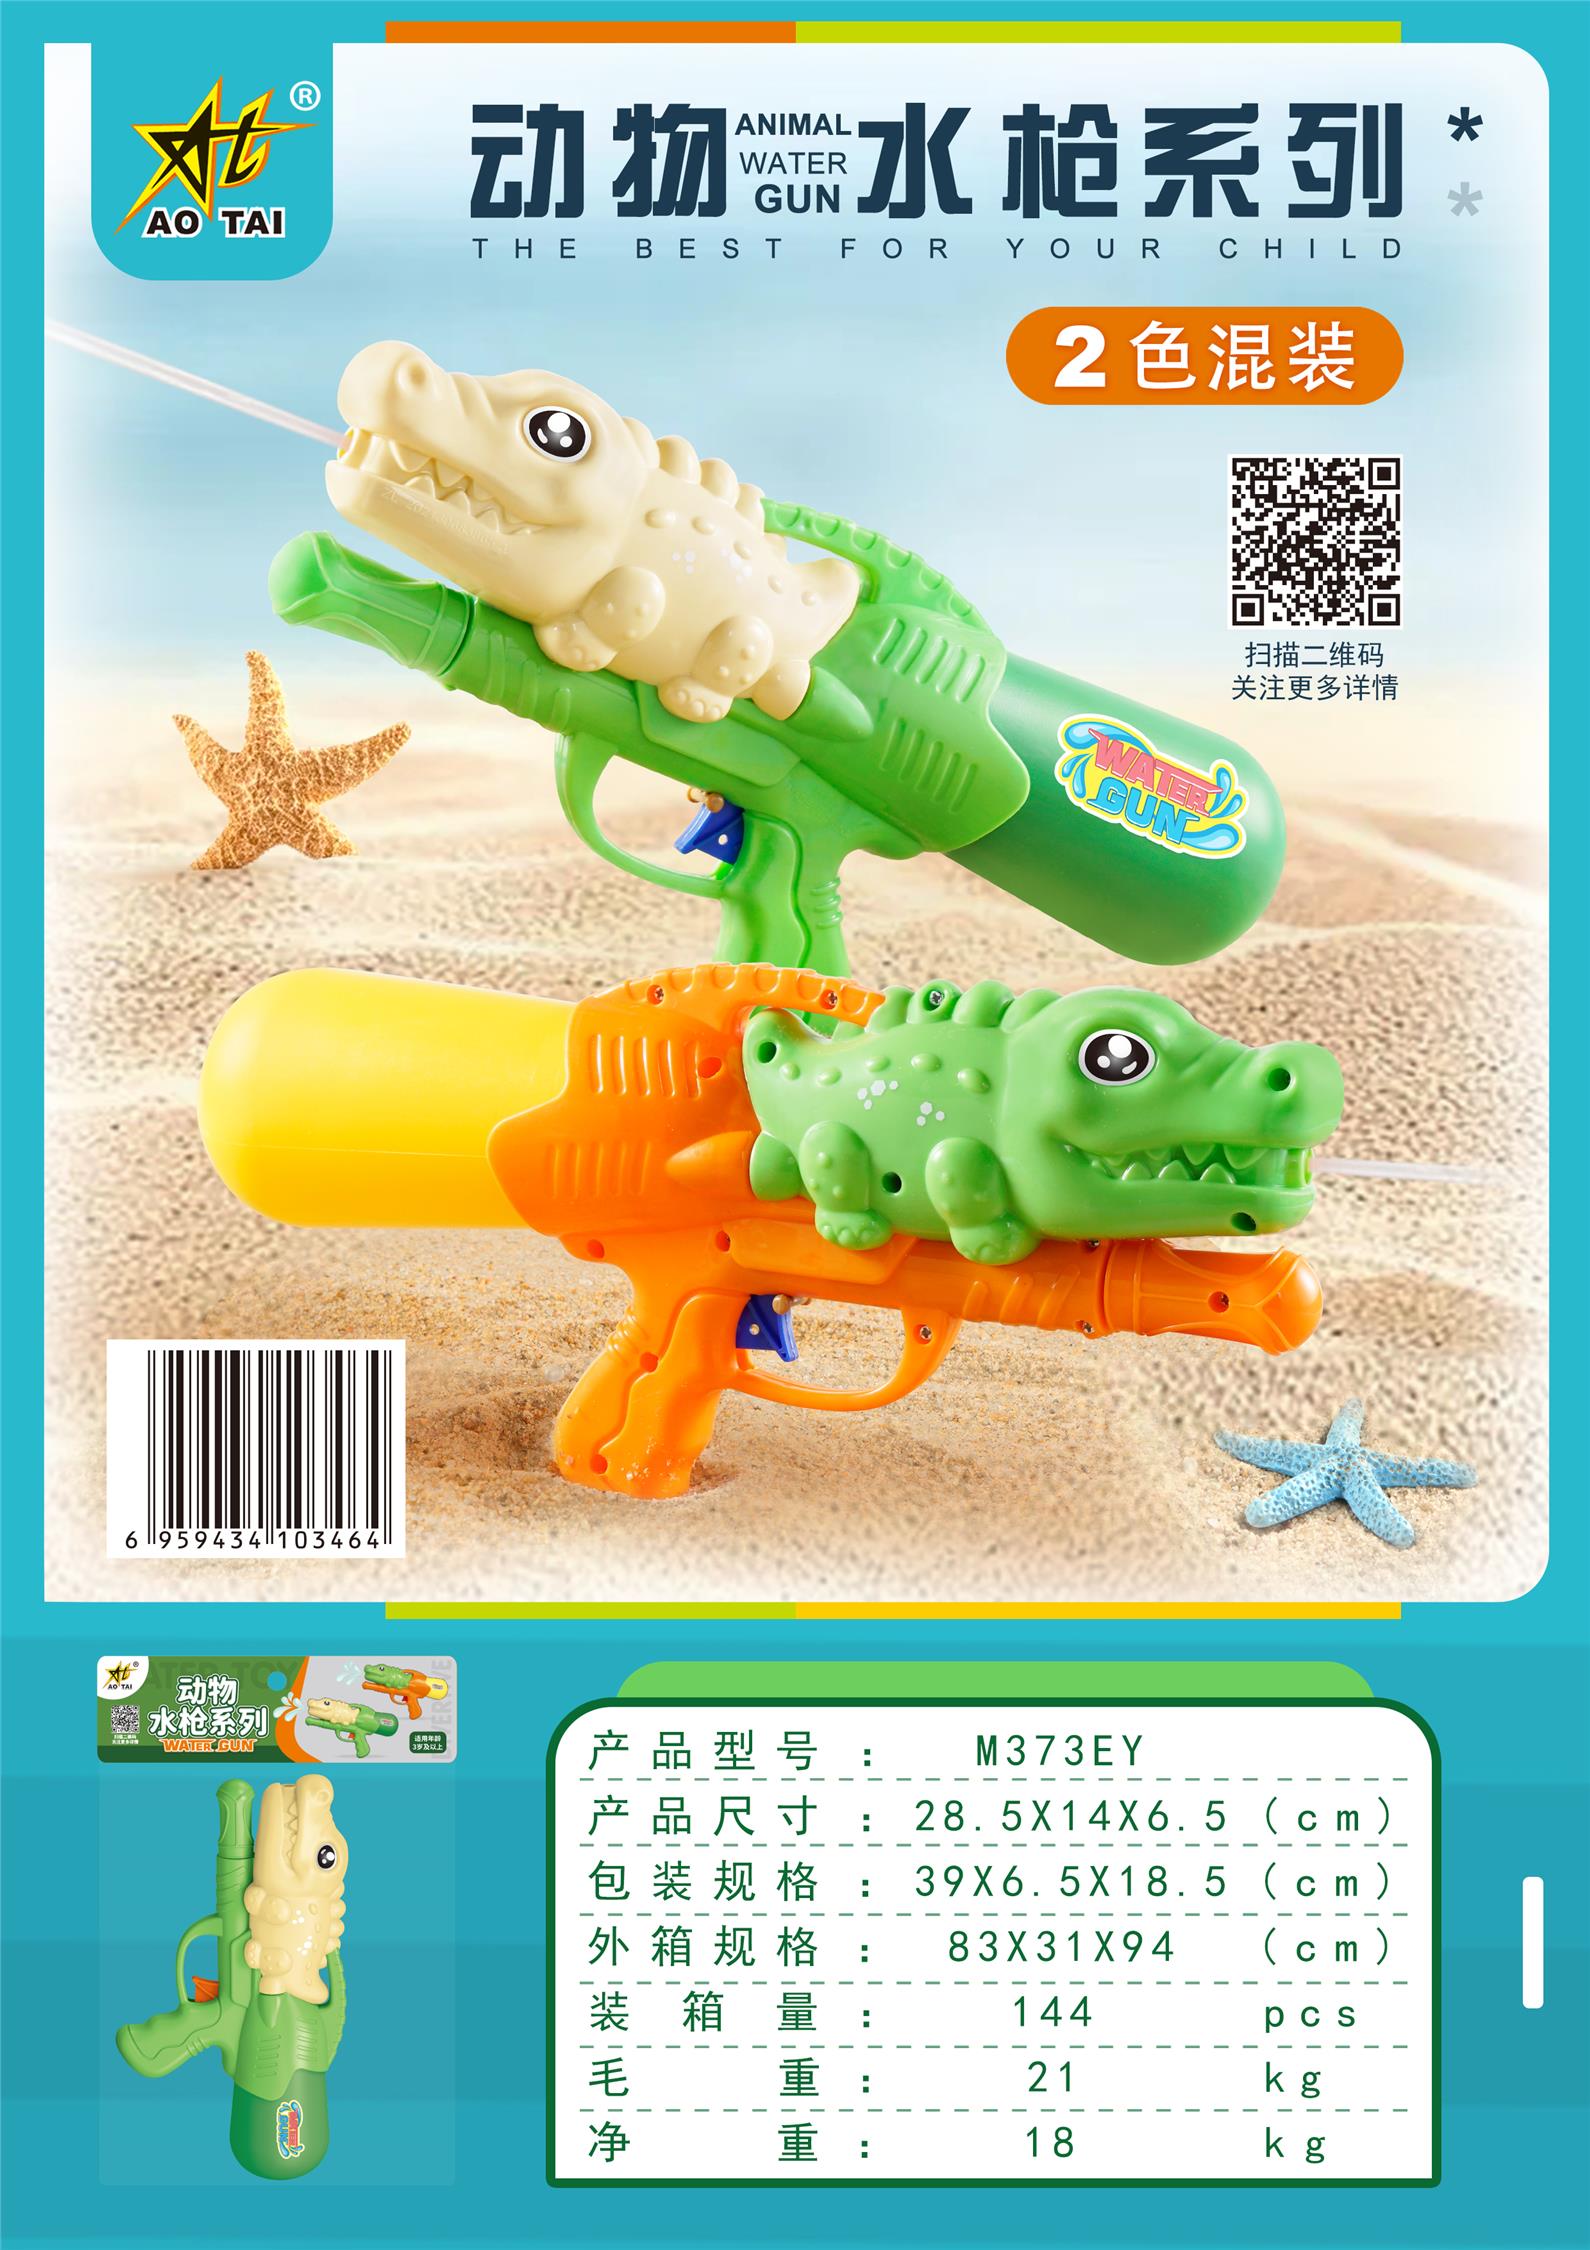 2022年新款水枪加压,卡通动物水枪，爆款水枪，黄荣仁塑料玩具，1025 ，塑料玩具图